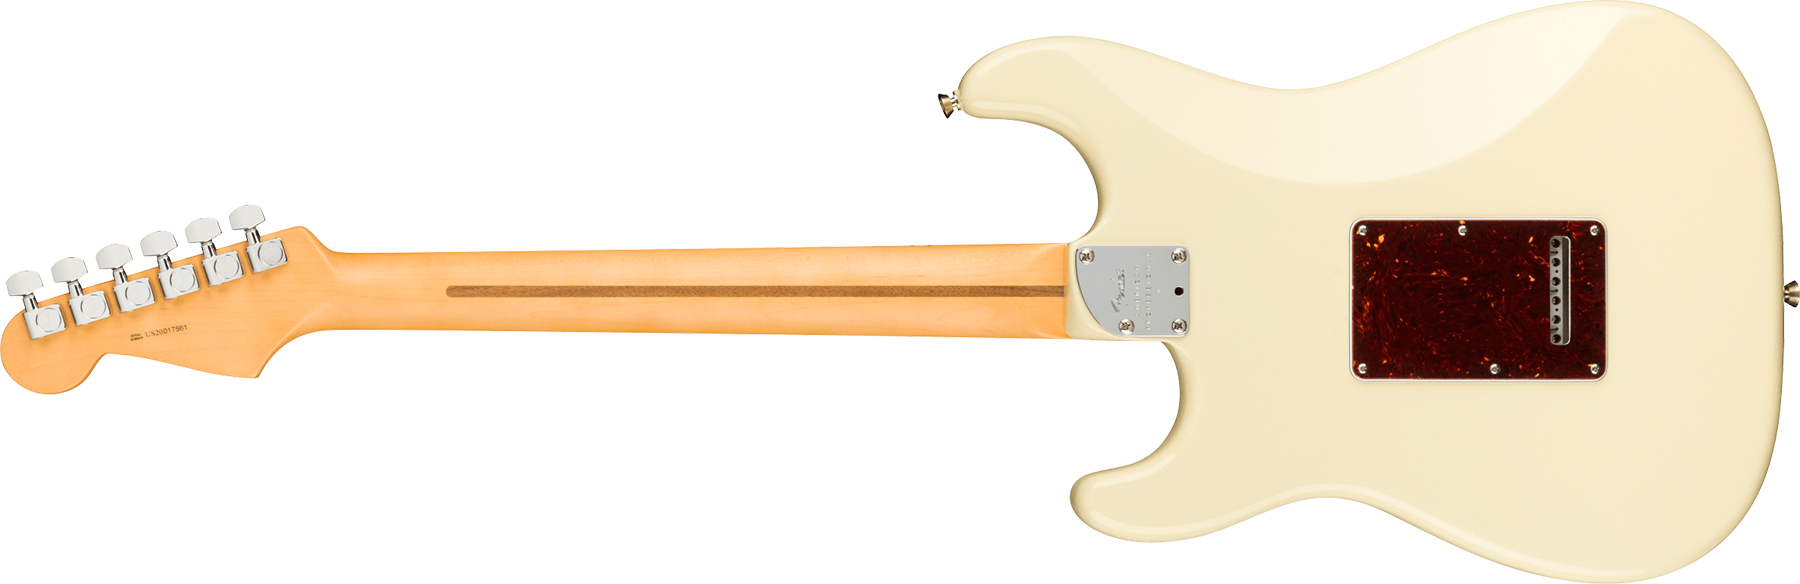 Fender Strat American Professional Ii Hss Usa Mn - Olympic White - Elektrische gitaar in Str-vorm - Variation 1